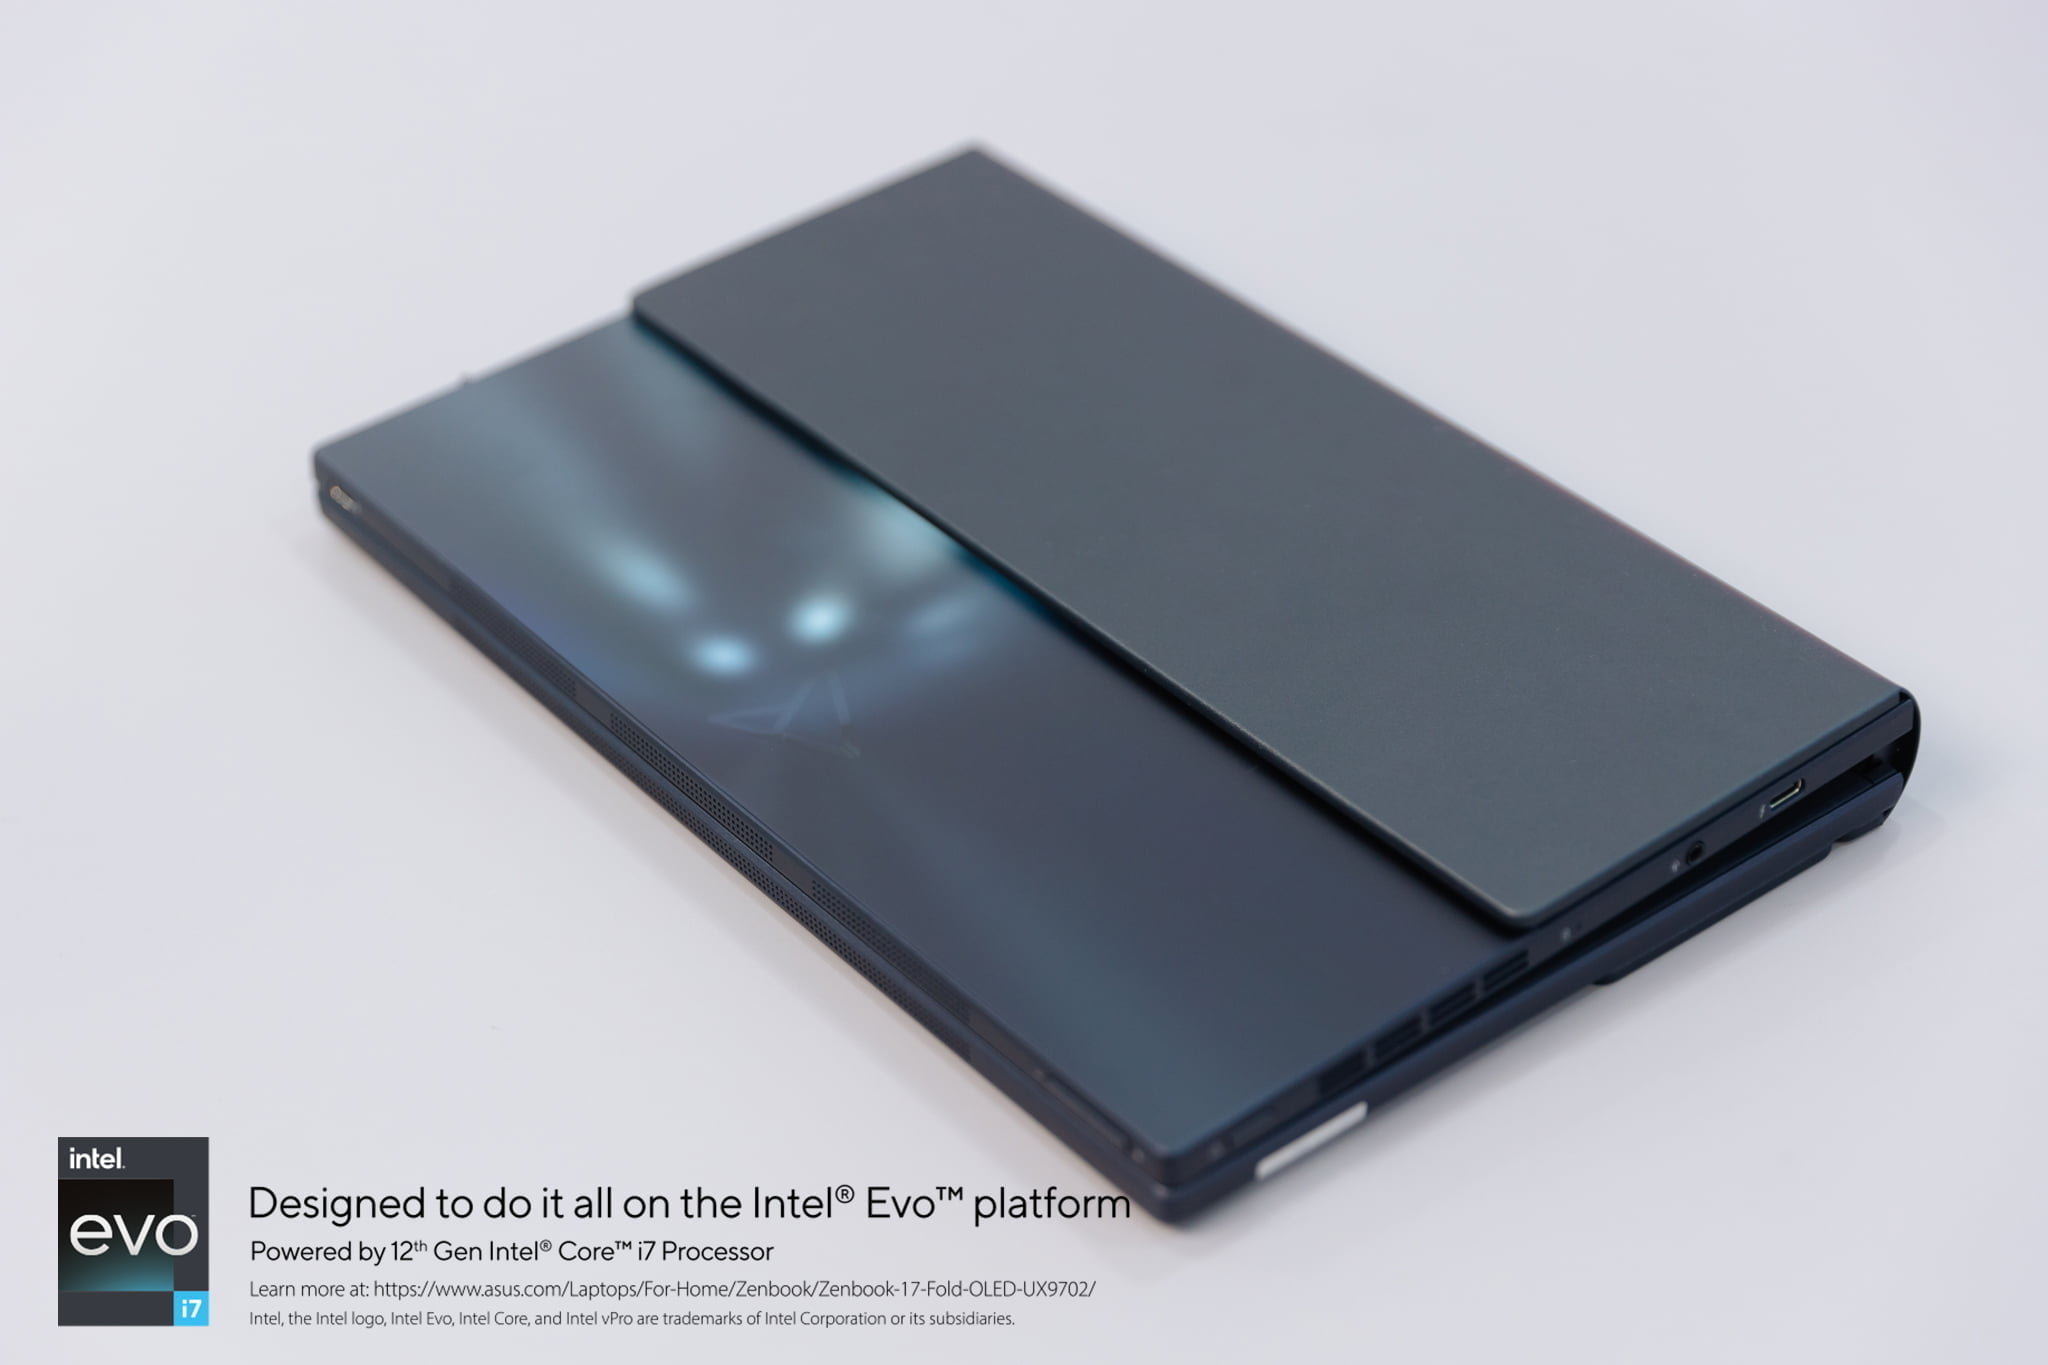 Đánh giá Zenbook 17 Fold OLED - Sản phẩm ấn tượng của ASUS liệu có mở ra kỉ nguyên mới